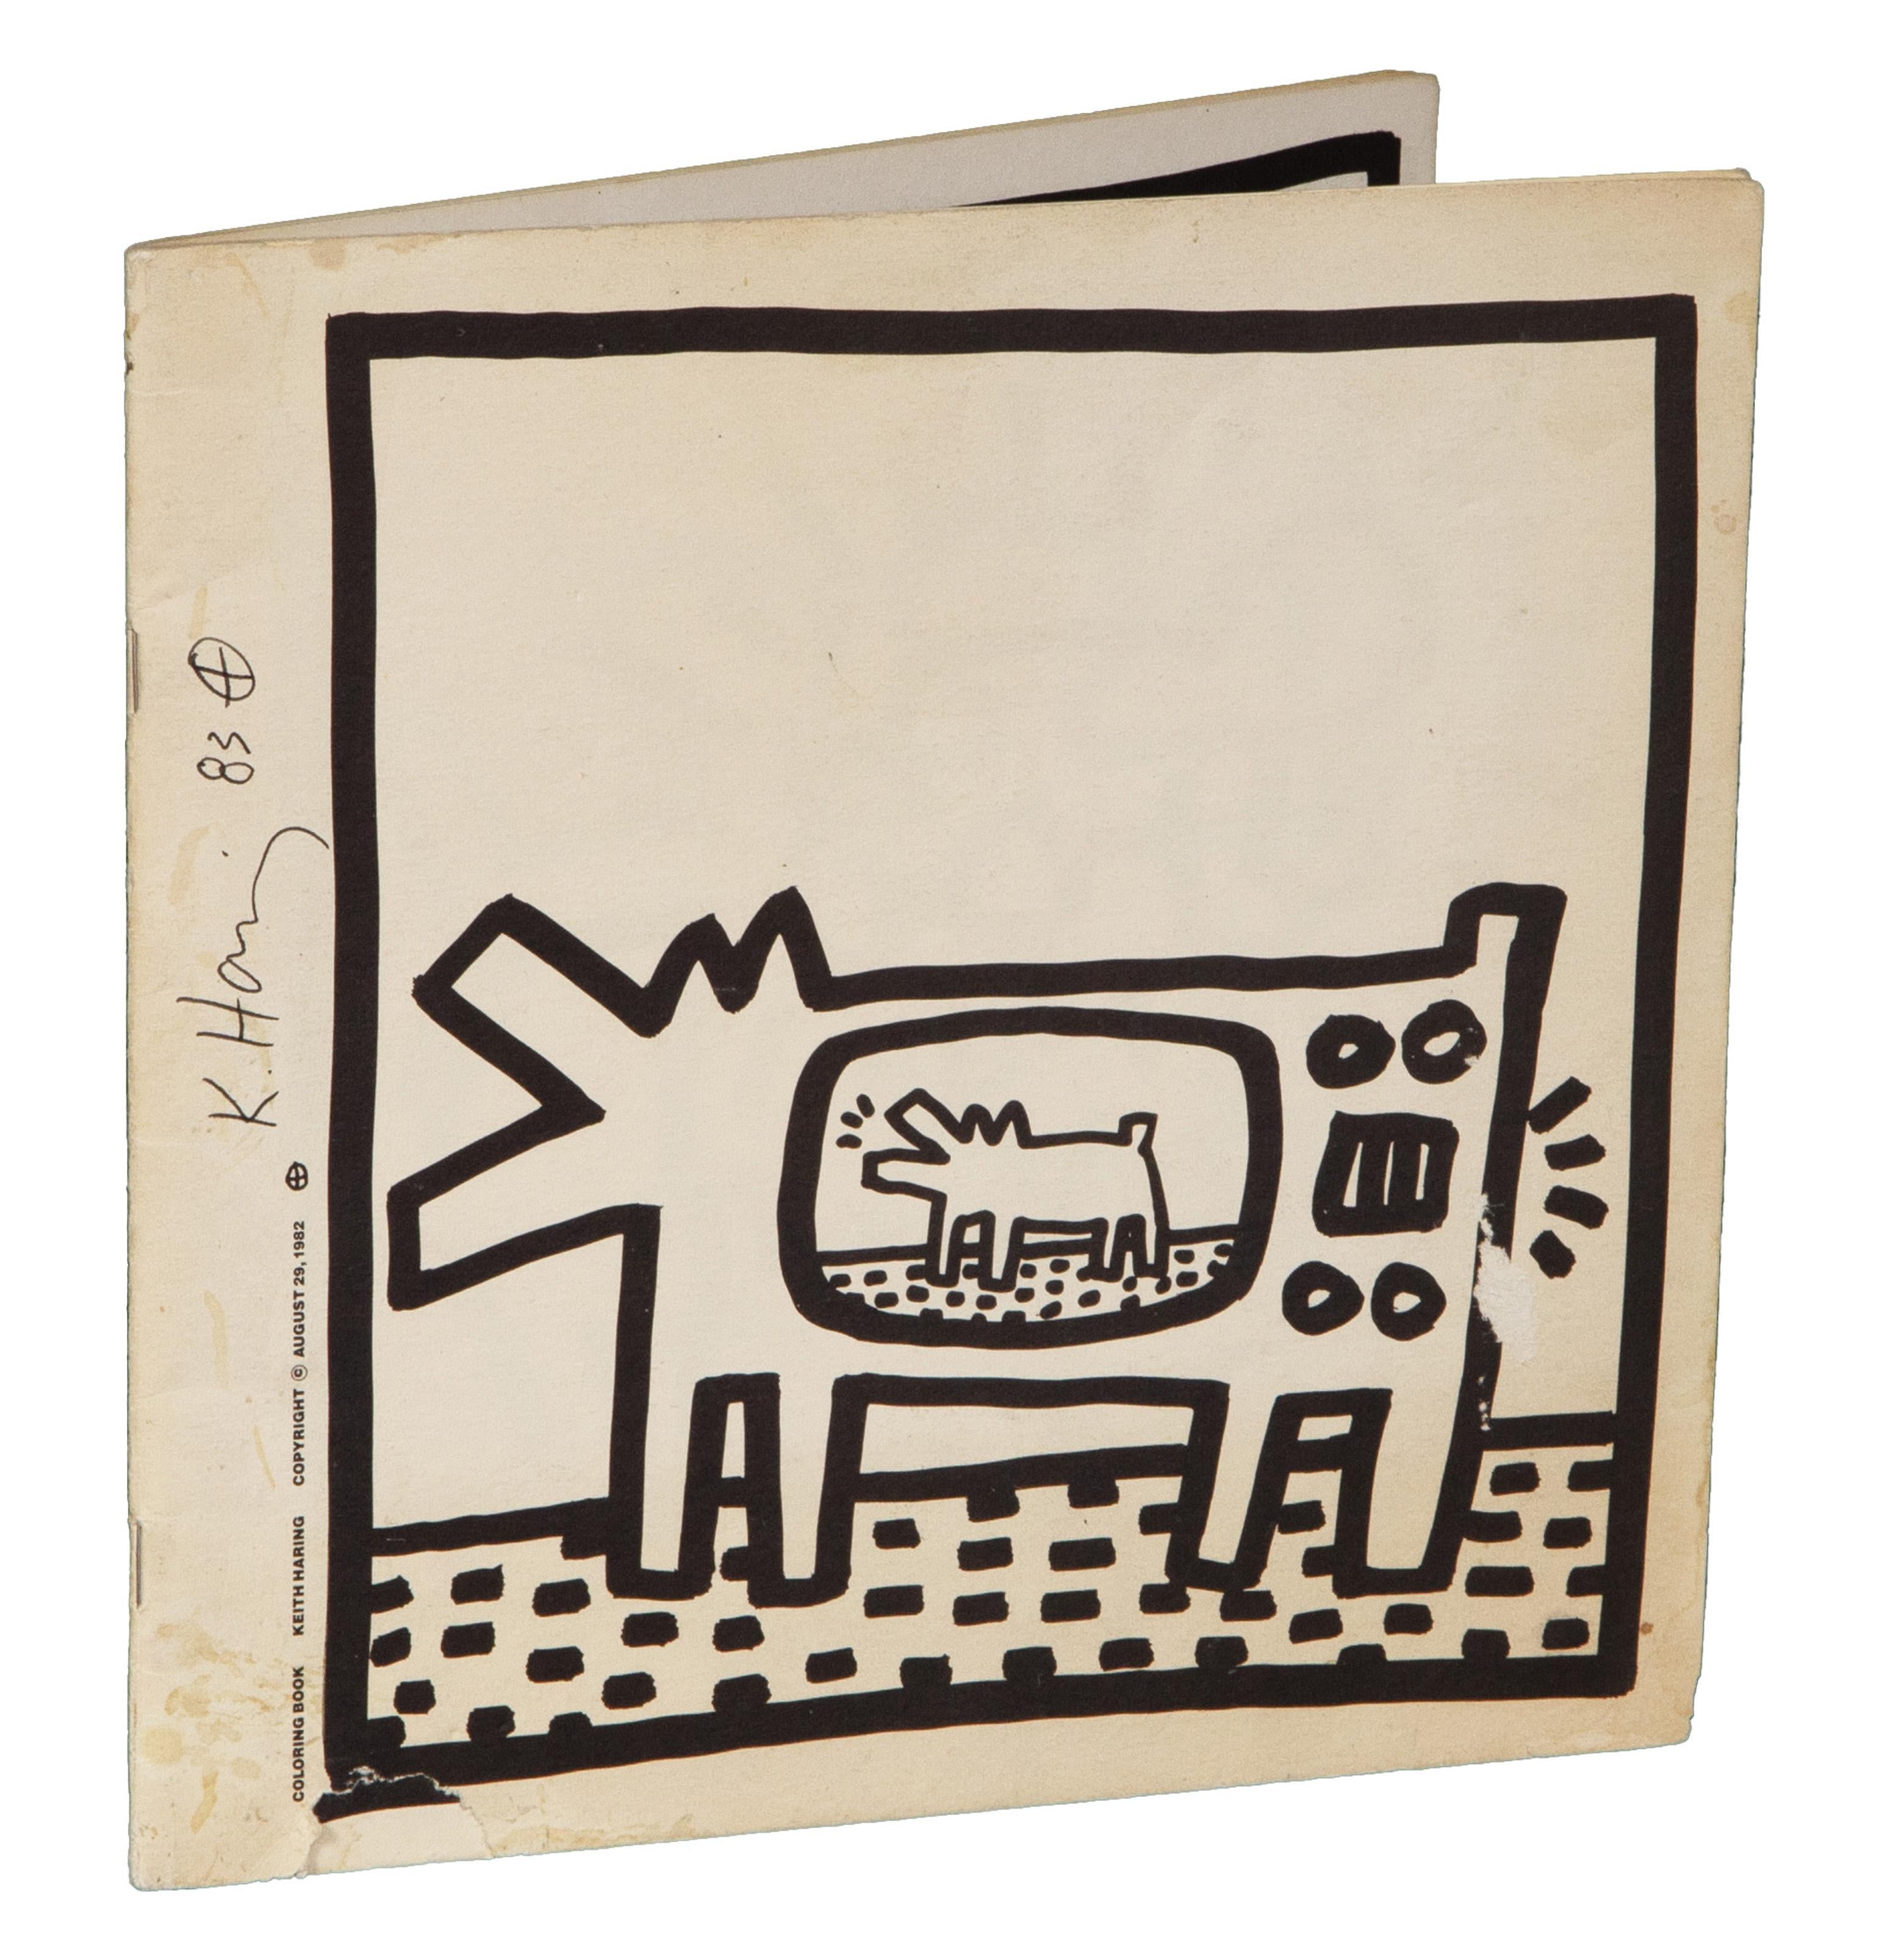 Ein Blanko-Malbuch, entworfen und gedruckt vom amerikanischen Pop-Künstler Keith Haring. Dieses Exemplar ist vom Künstler mit Feder signiert und datiert und enthält mehrere Illustrationen im klassischen Stil des Künstlers.

Malbuch
Keith Haring,